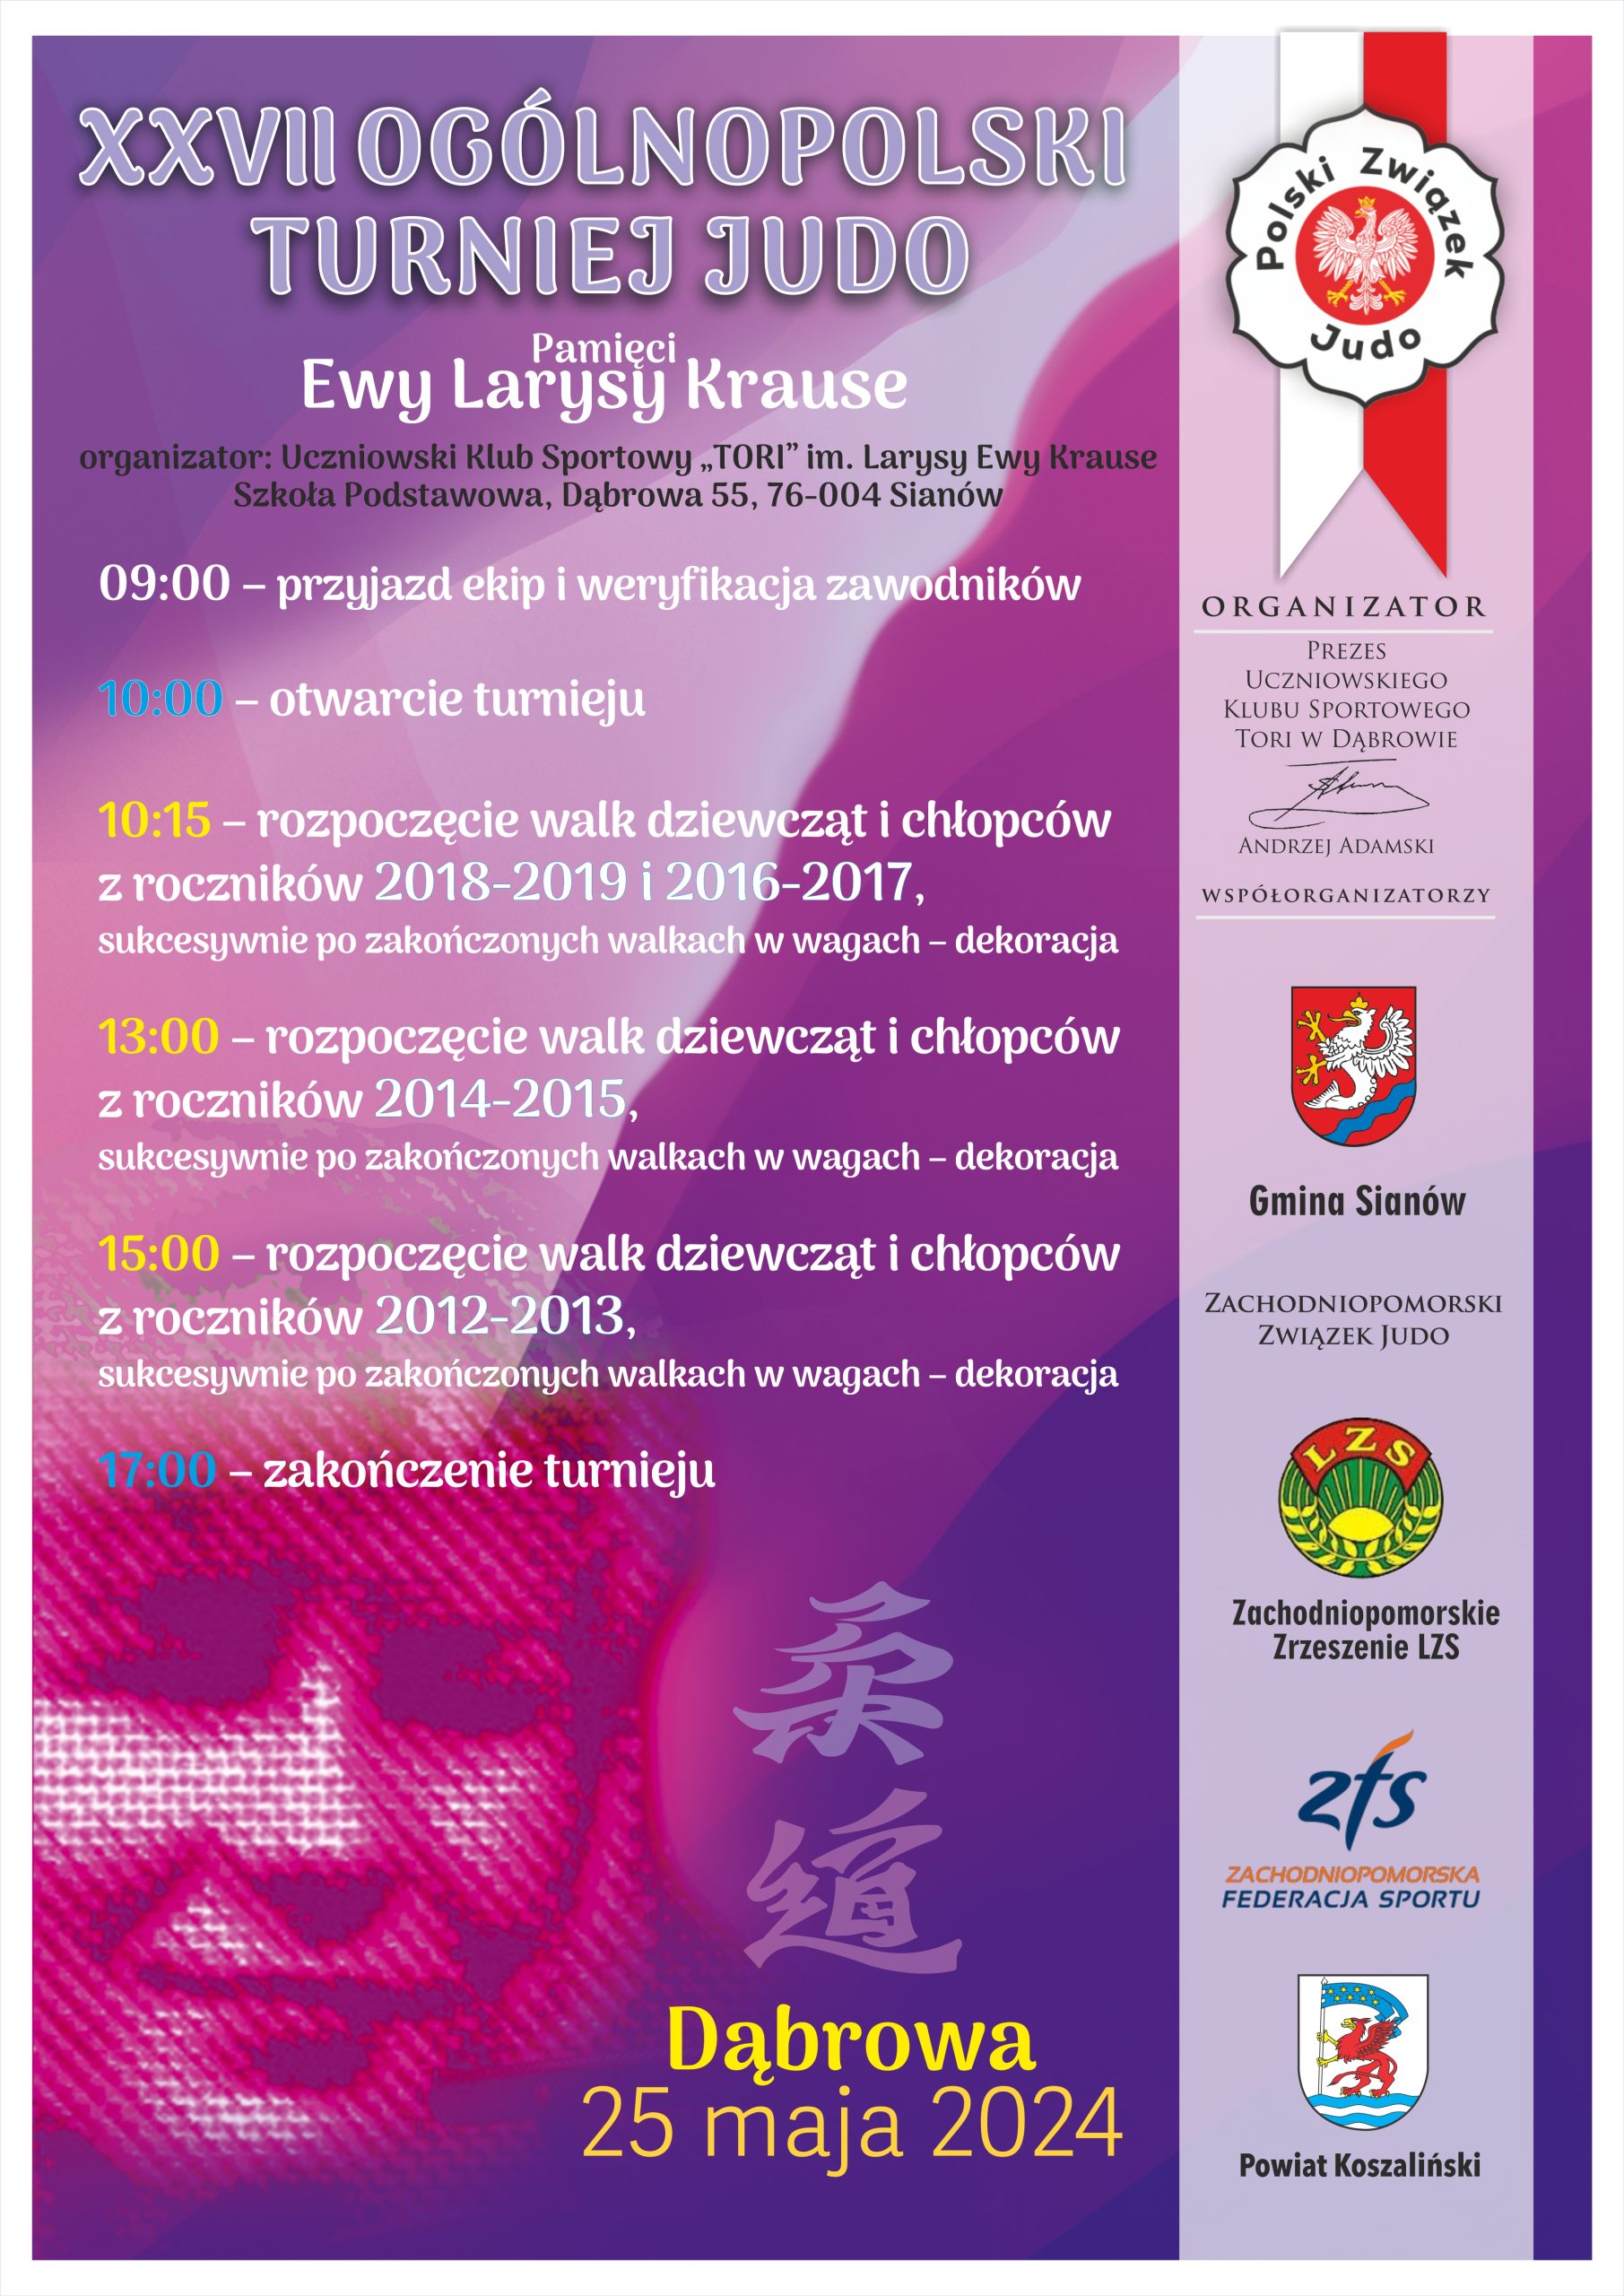 Plakat z zaproszeniem na 27. Ogólnopolski Turniej Judo w Dąbrowie gmina Sianów 25.0.2024